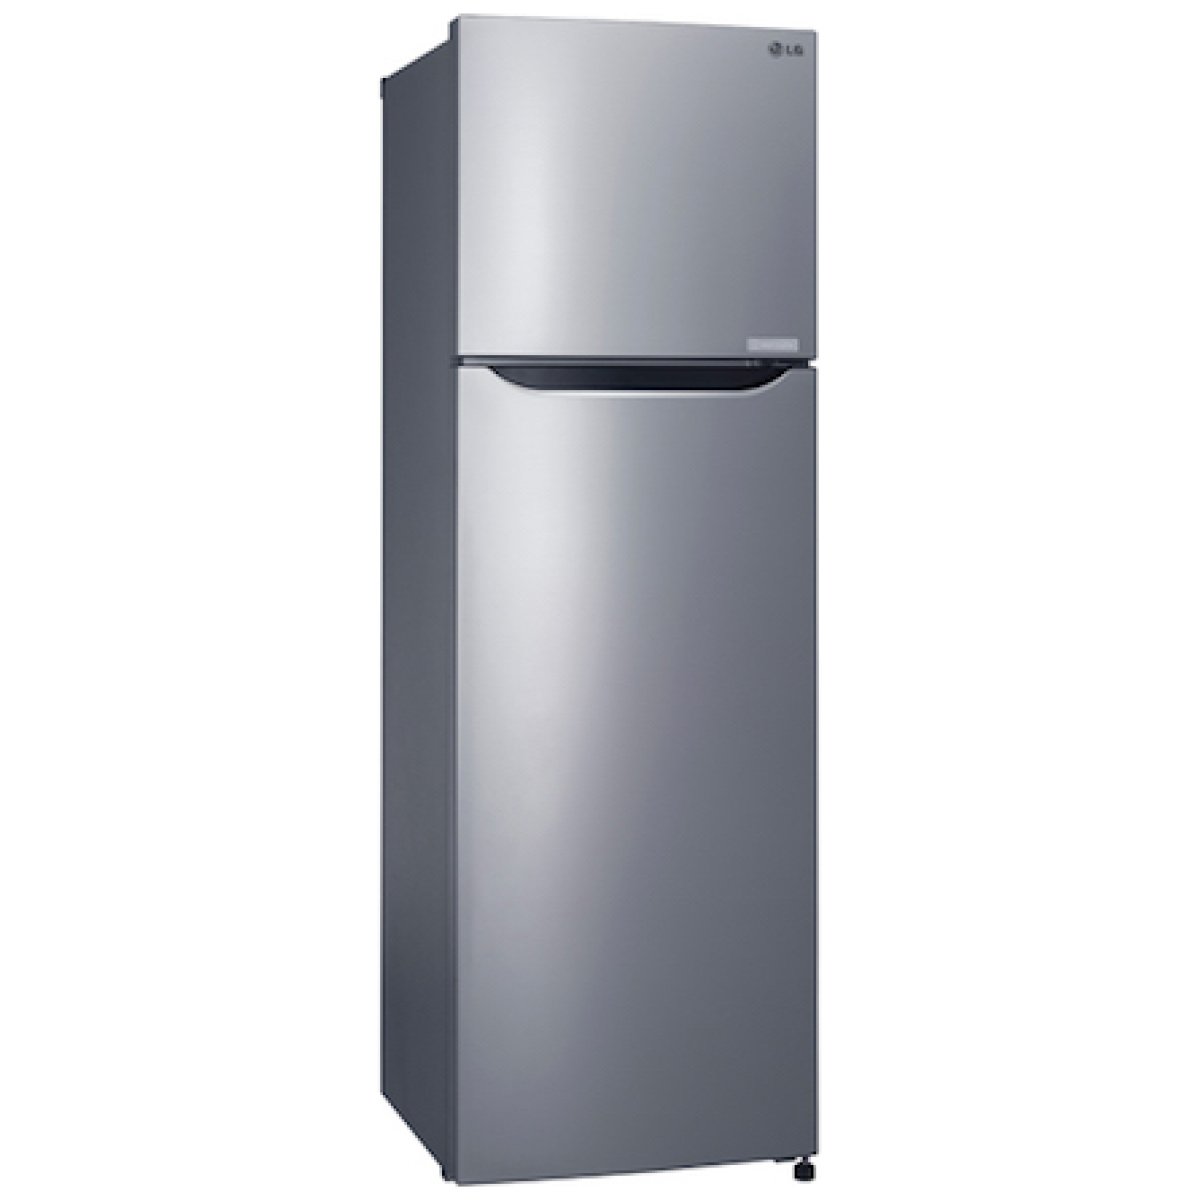 LG Two Door Refrigerator Top Freezer REF 272 SLCL